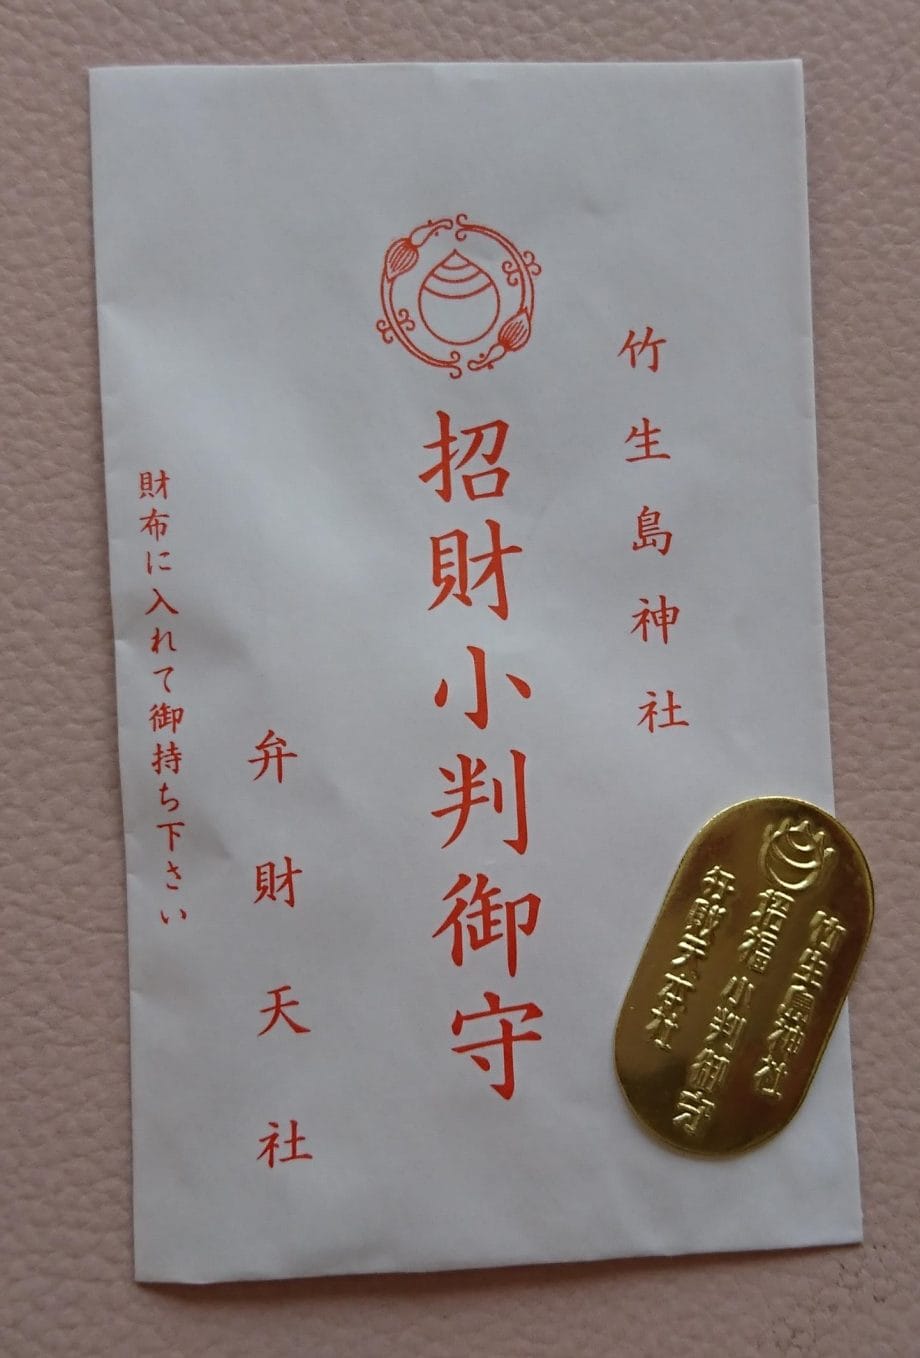 竹生島の都久夫須麻神社の弁財天社で授与した招財小判御守